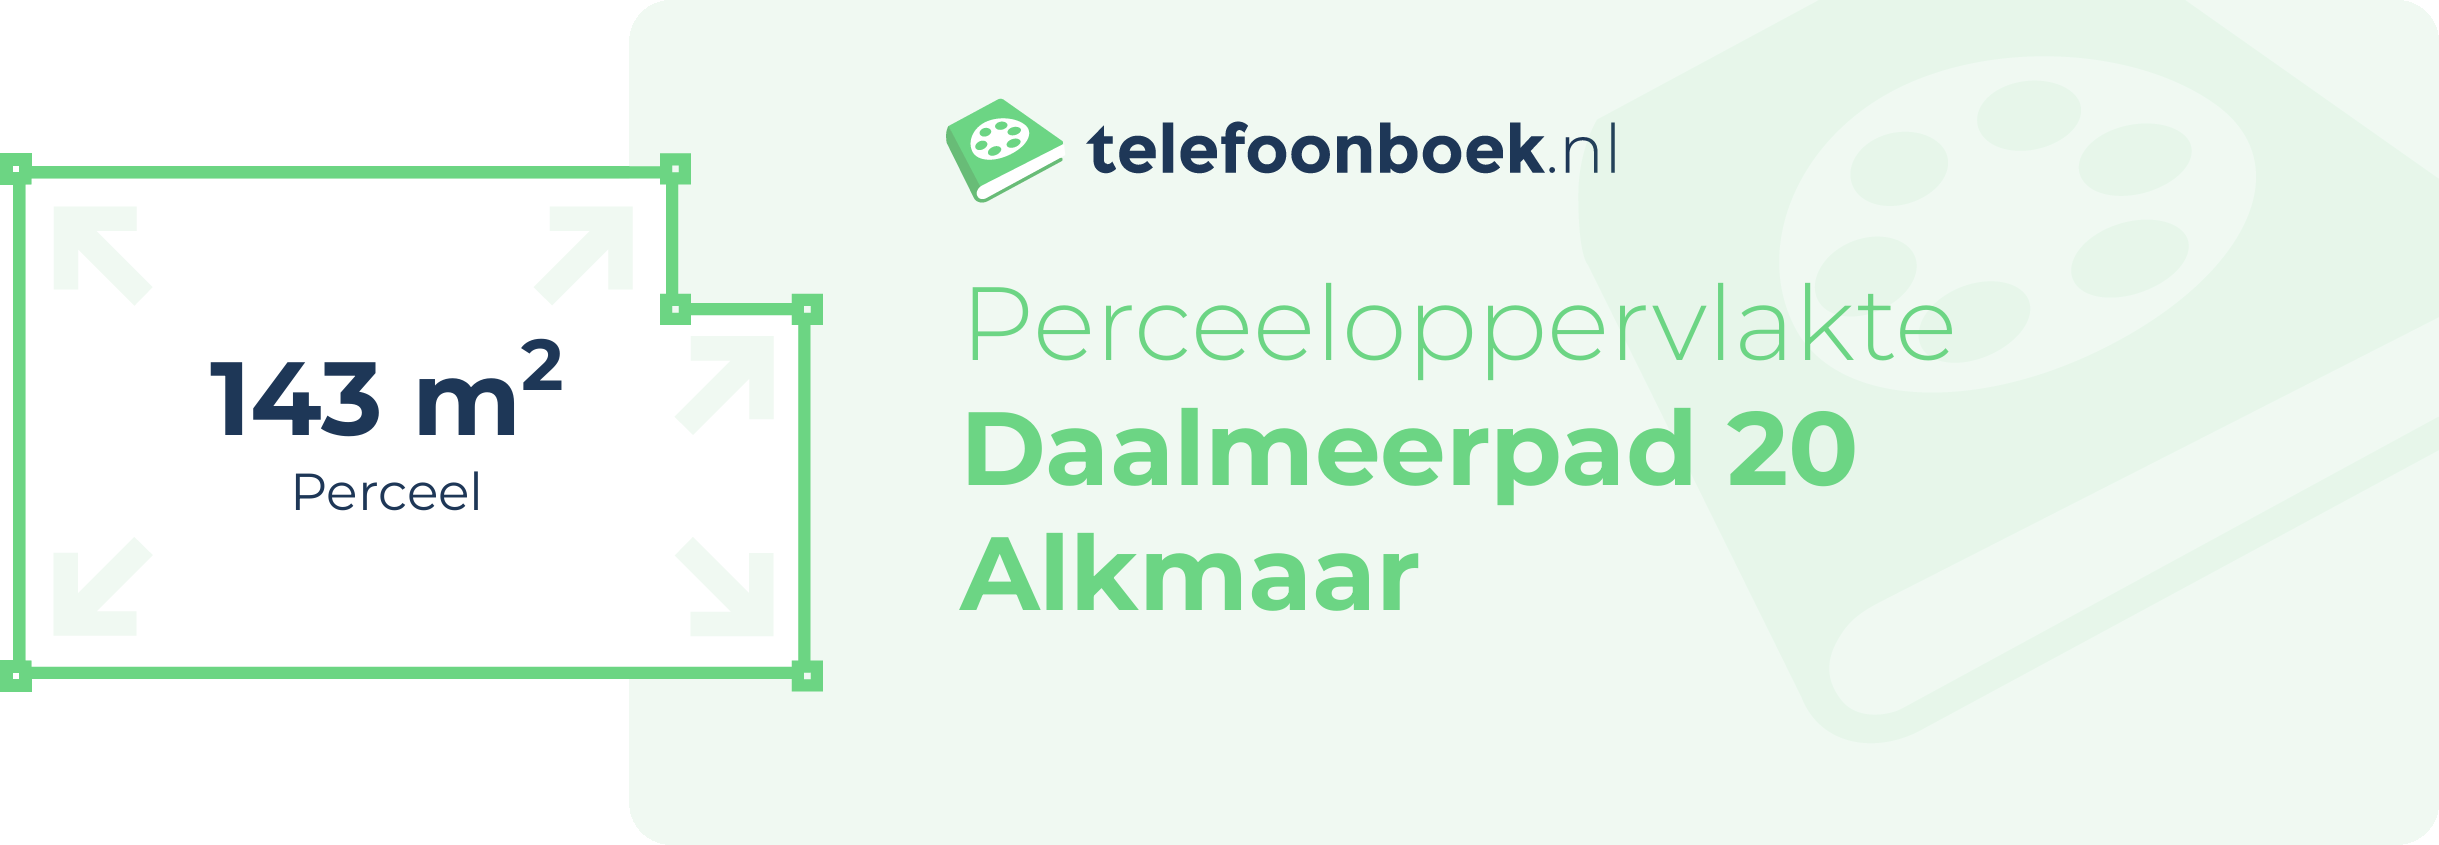 Perceeloppervlakte Daalmeerpad 20 Alkmaar